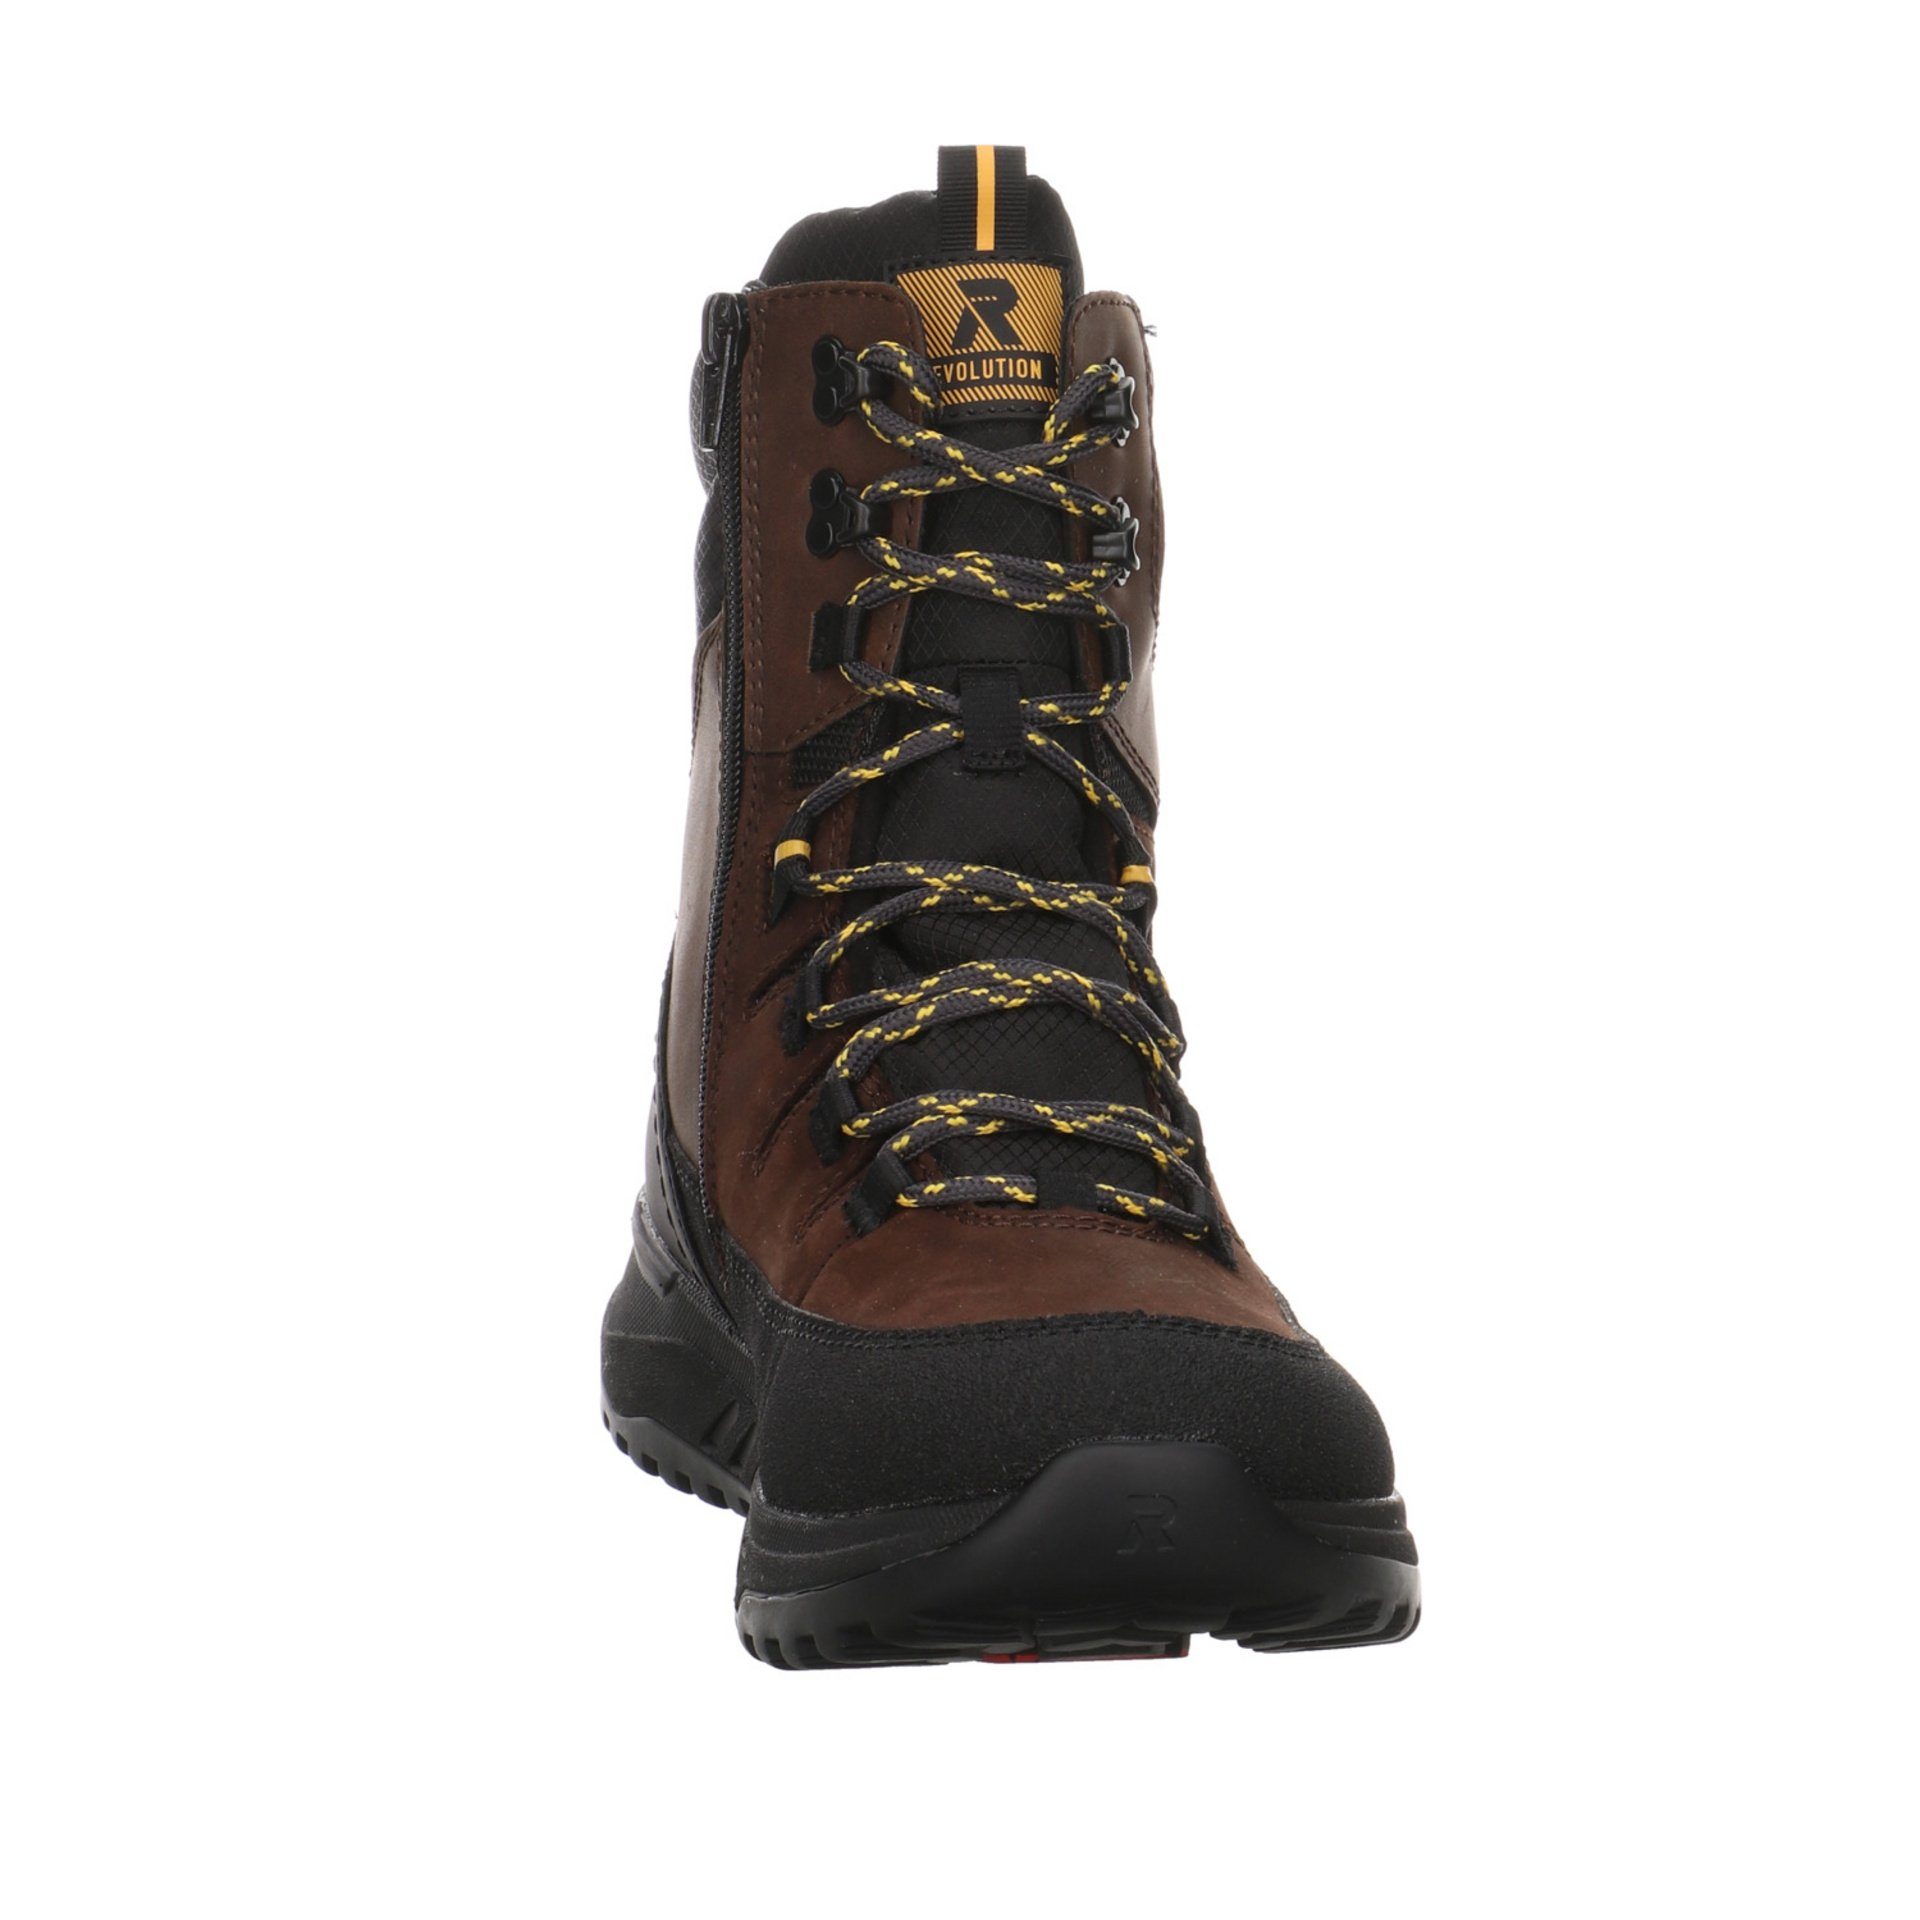 Rieker Herren braun Winterstiefel Snowboots dunkel Leder-/Textilkombination Boots Elegant Freizeit Schuhe